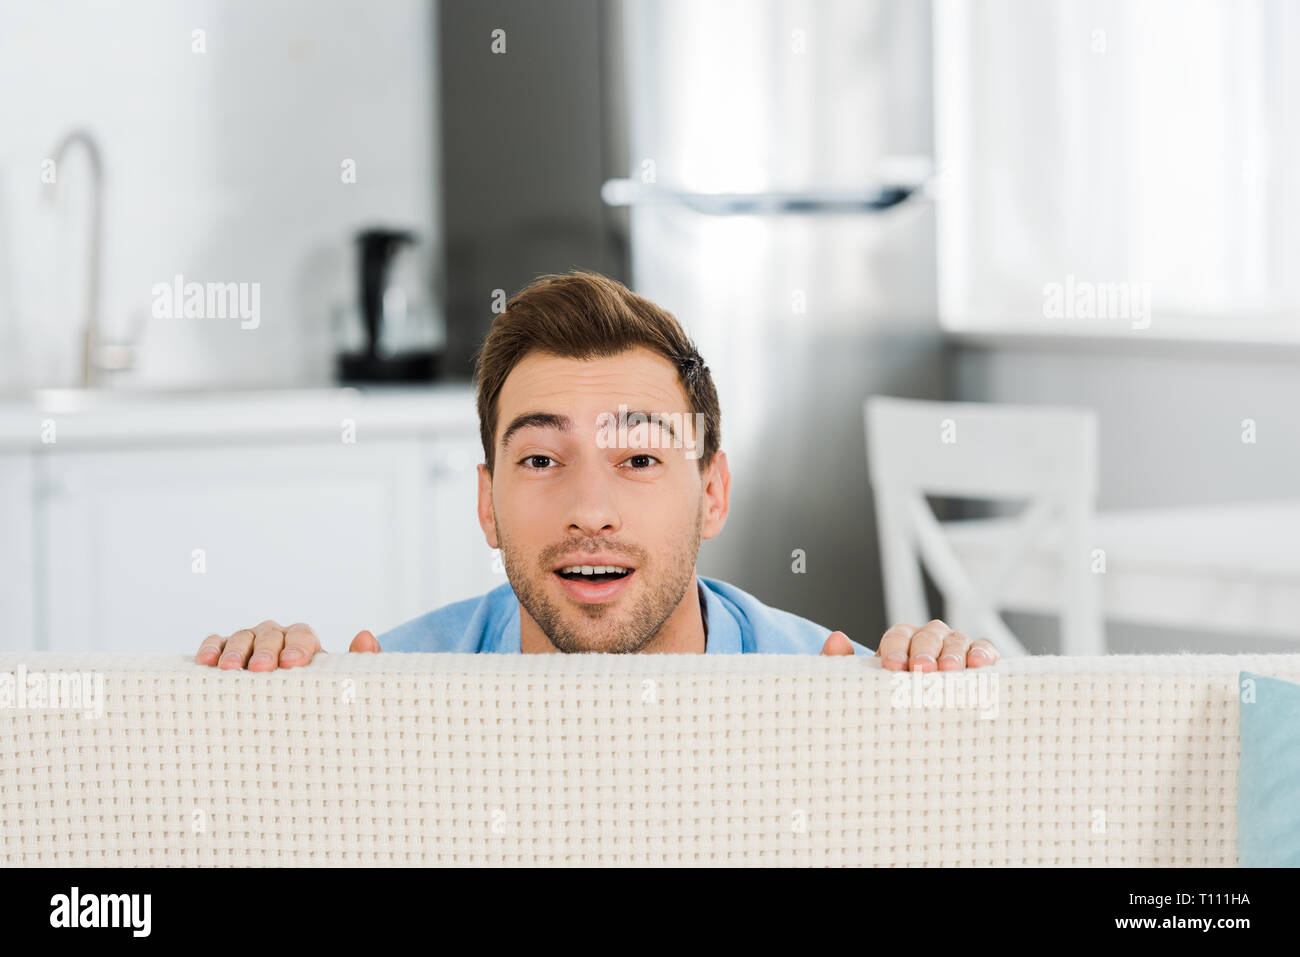 Überrascht, stattlicher Mann mit Kamera suchen und verstecken sich hinter  Couch zu Hause Stockfotografie - Alamy